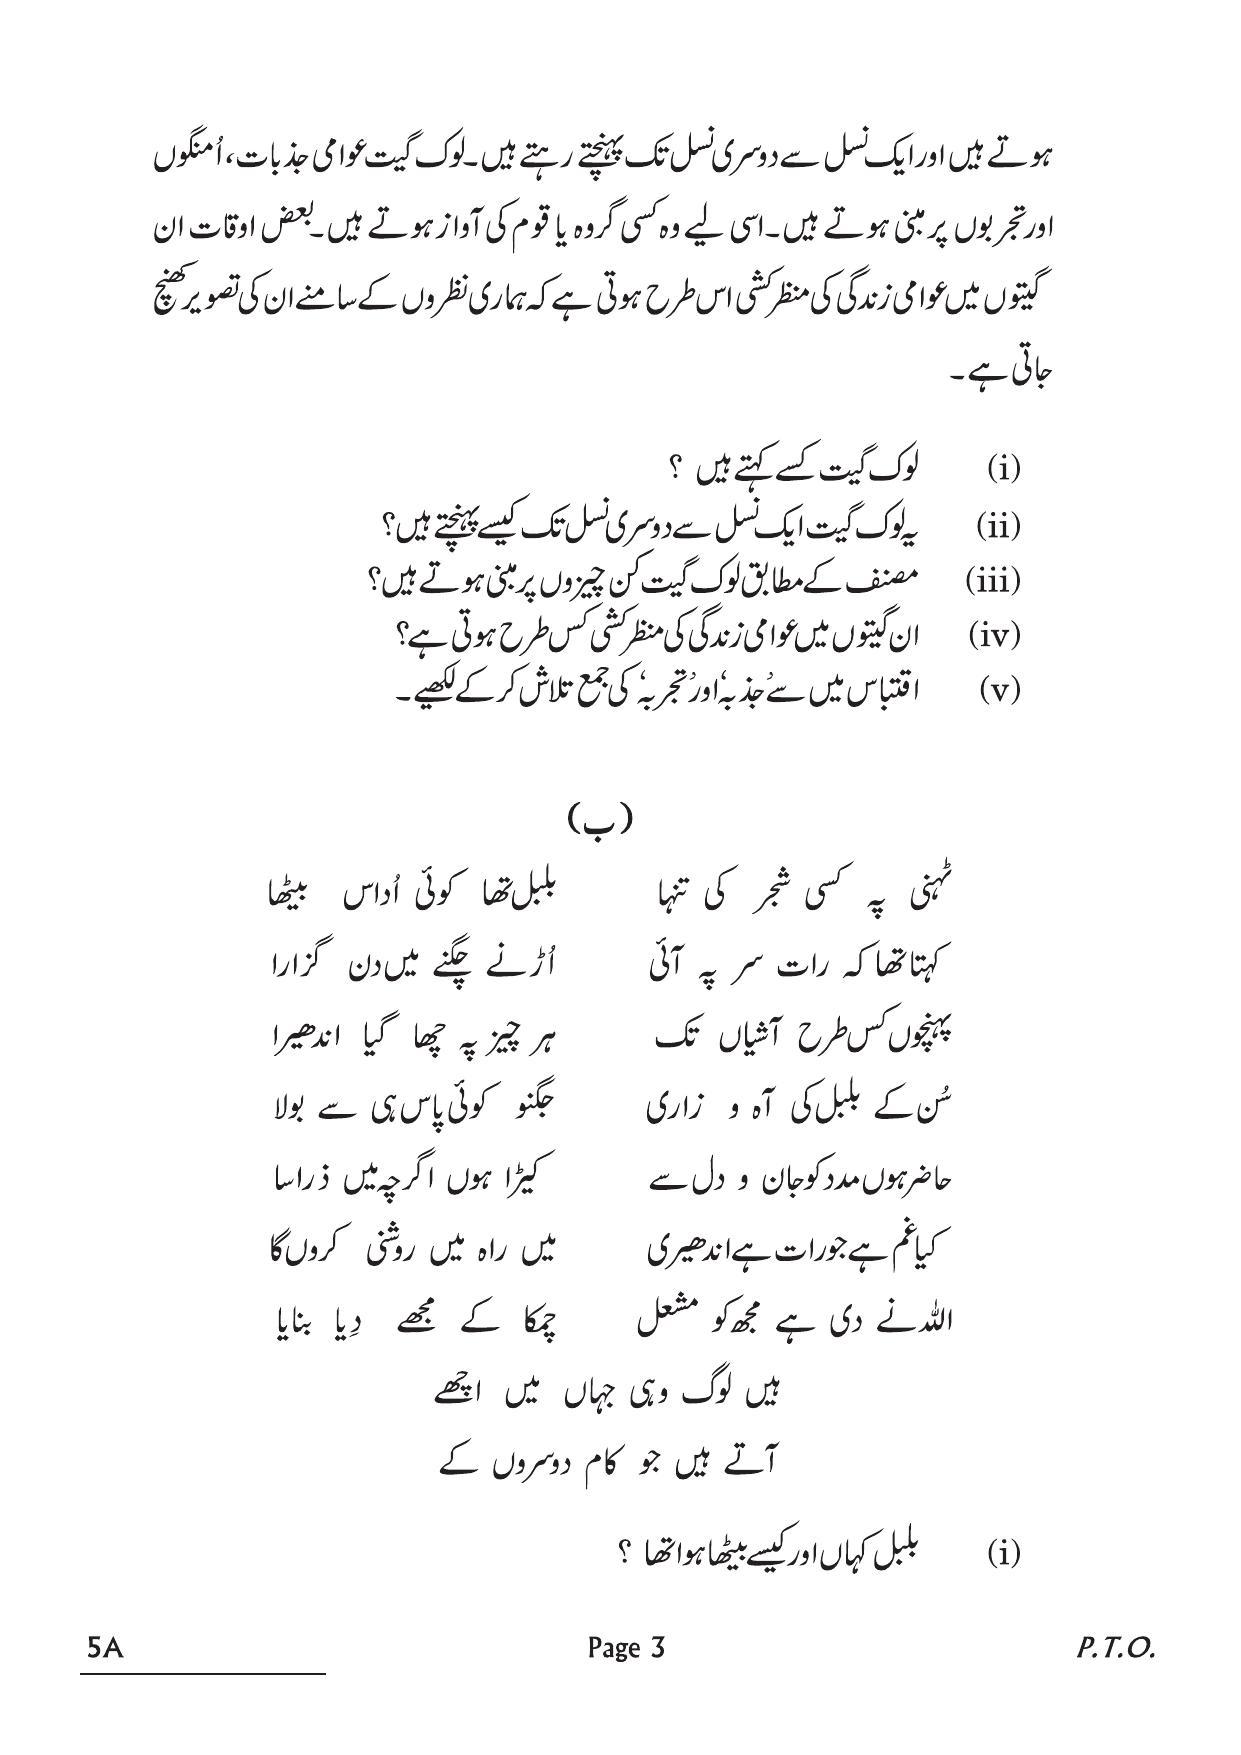 CBSE Class 10 5A Urdu A 2022 Question Paper - Page 3